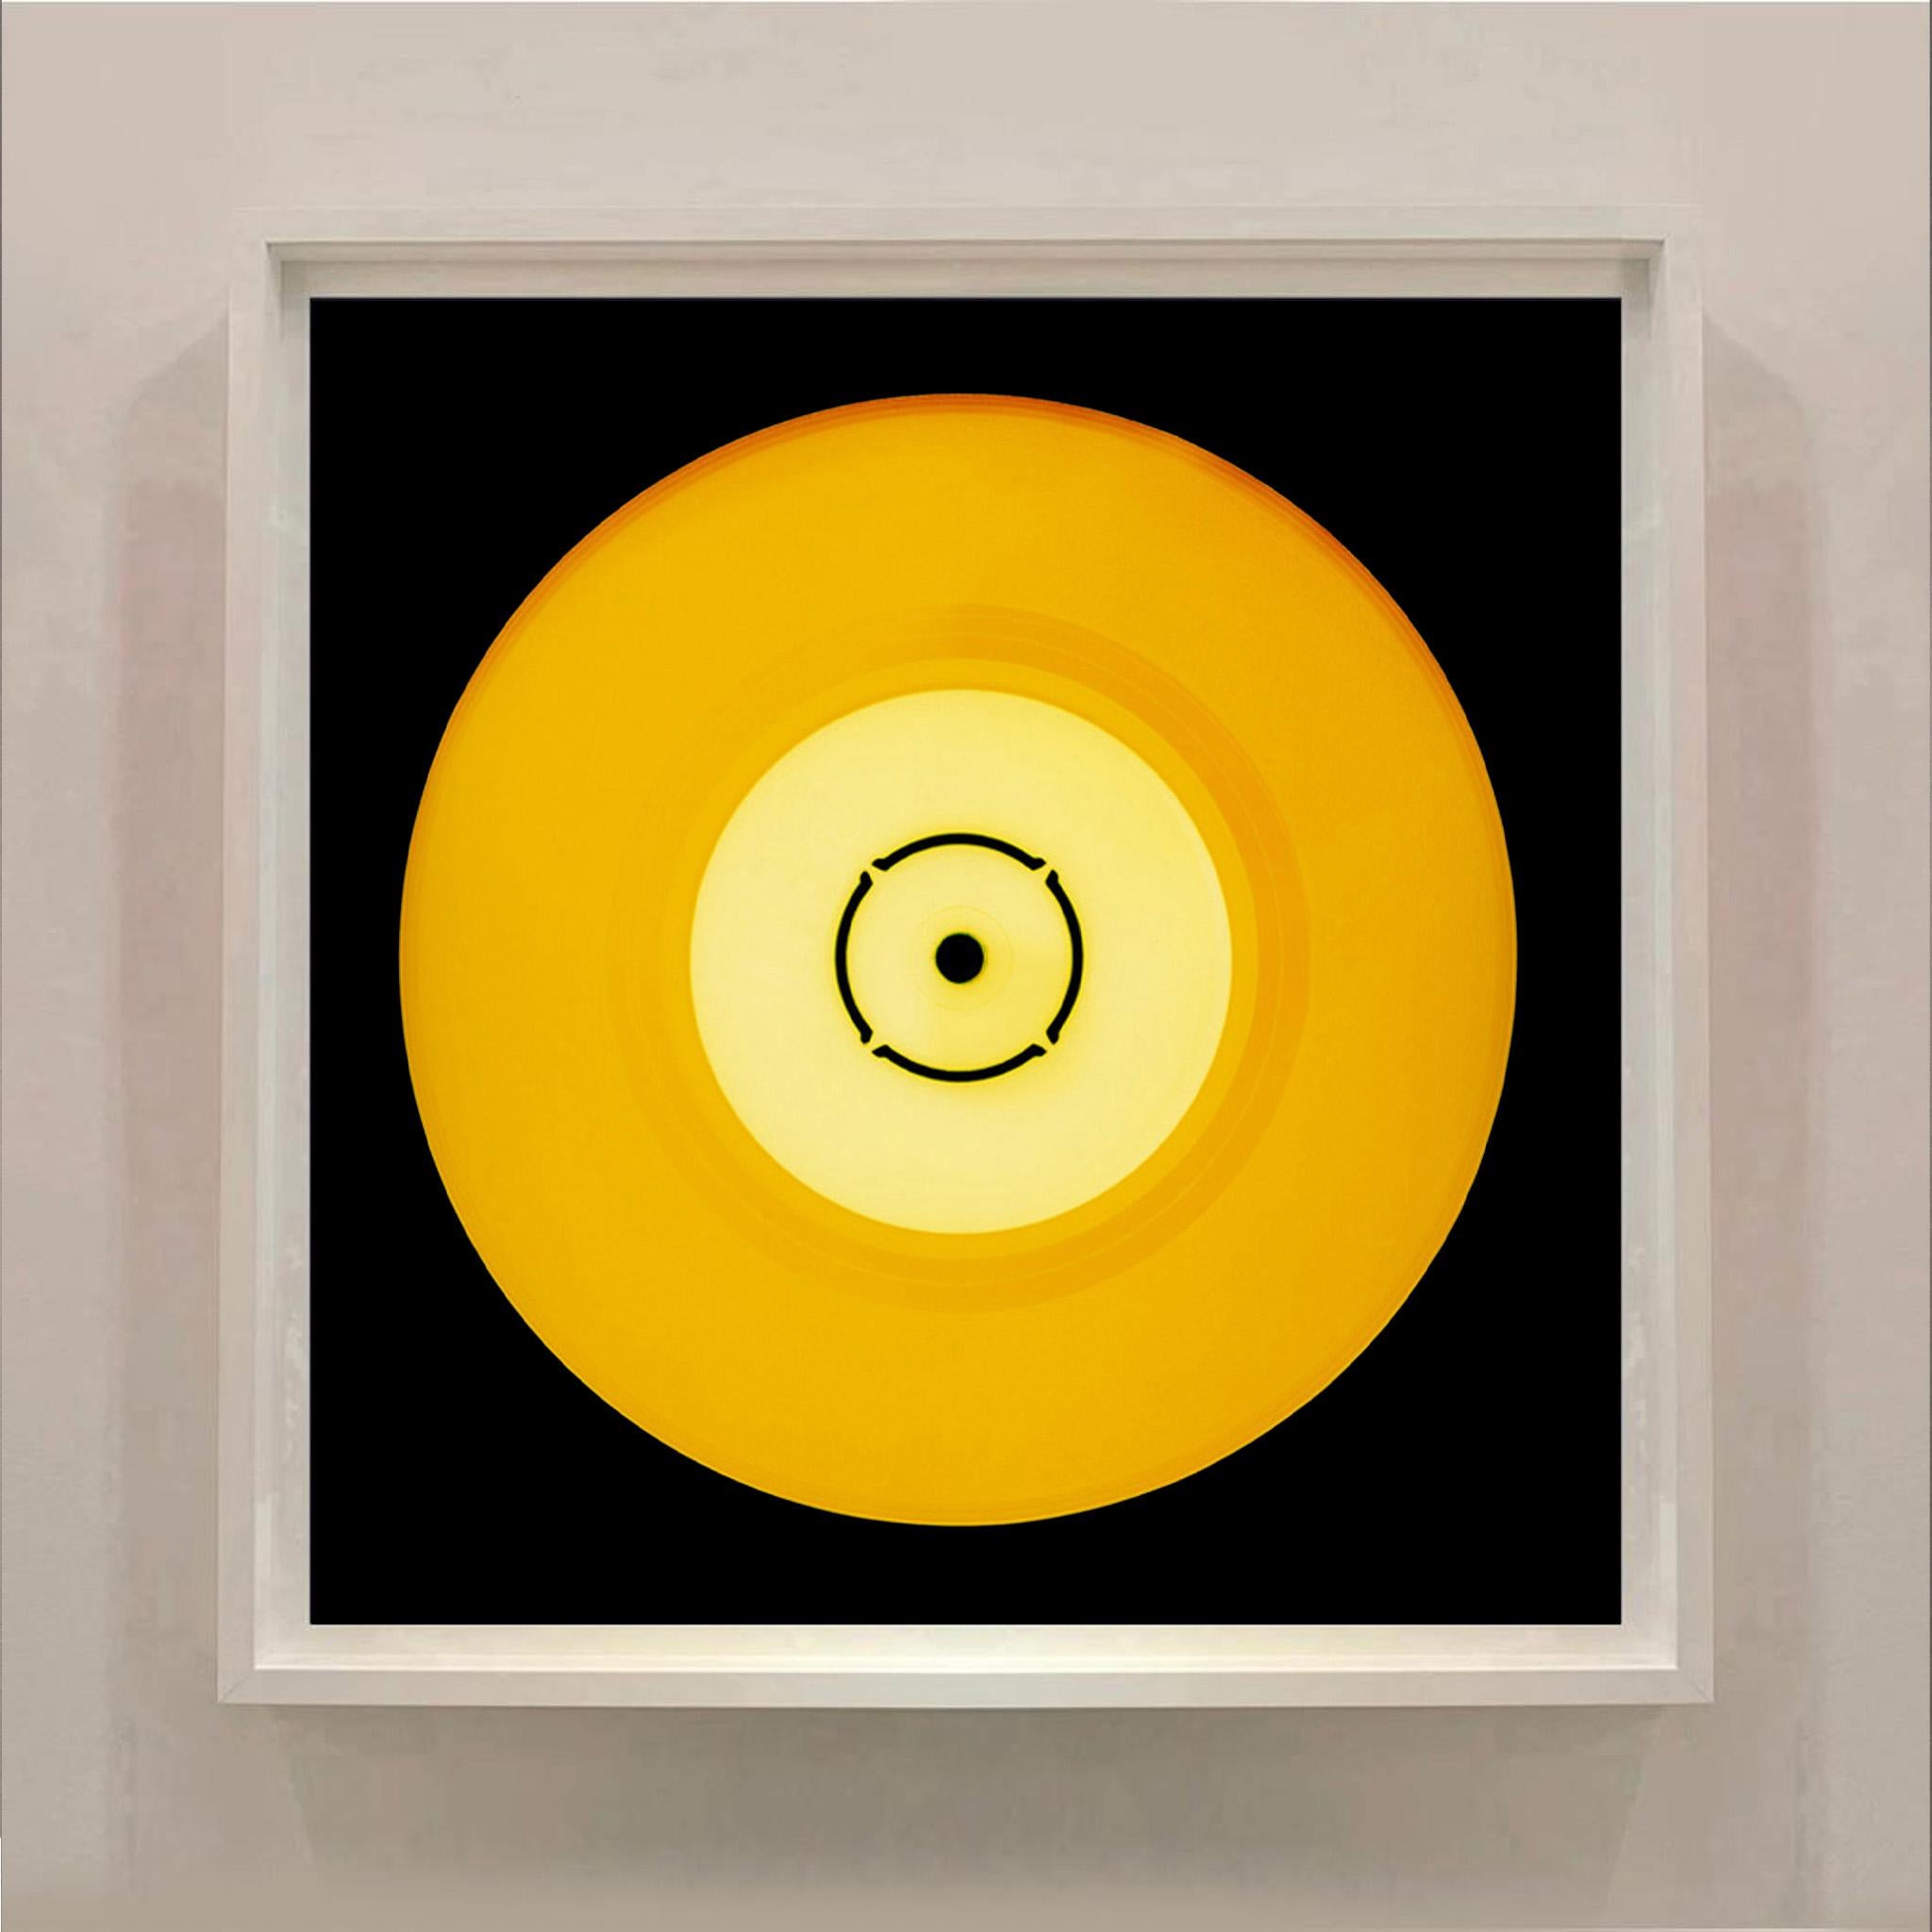 Vinyl Kollektion, Double B Side Sunshine - Konzeptionelle Pop-Art-Farbfotografie (Gelb), Print, von Heidler & Heeps